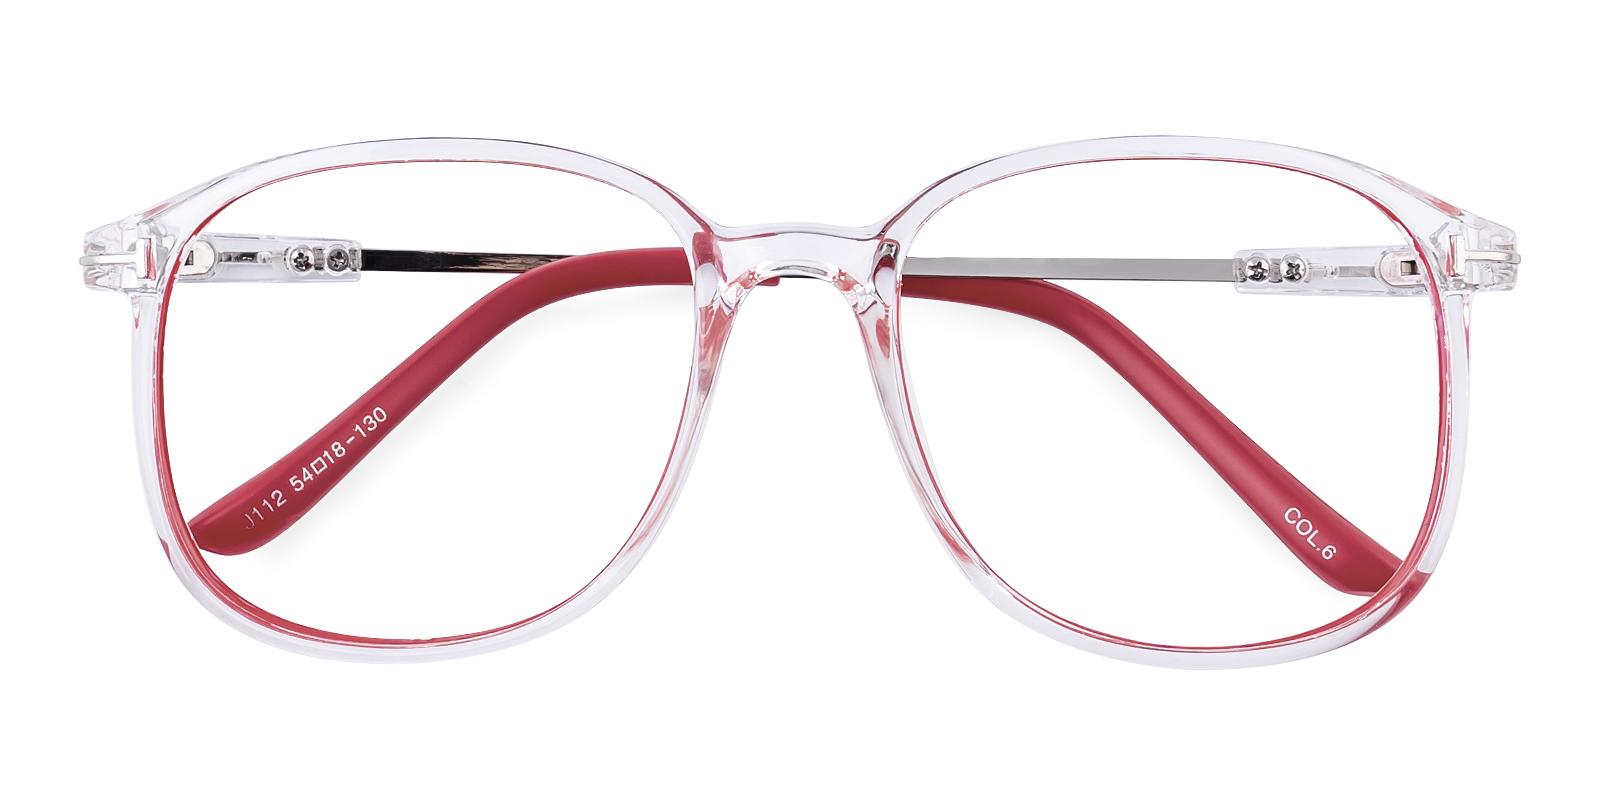 Bloda Red TR Eyeglasses , UniversalBridgeFit Frames from ABBE Glasses